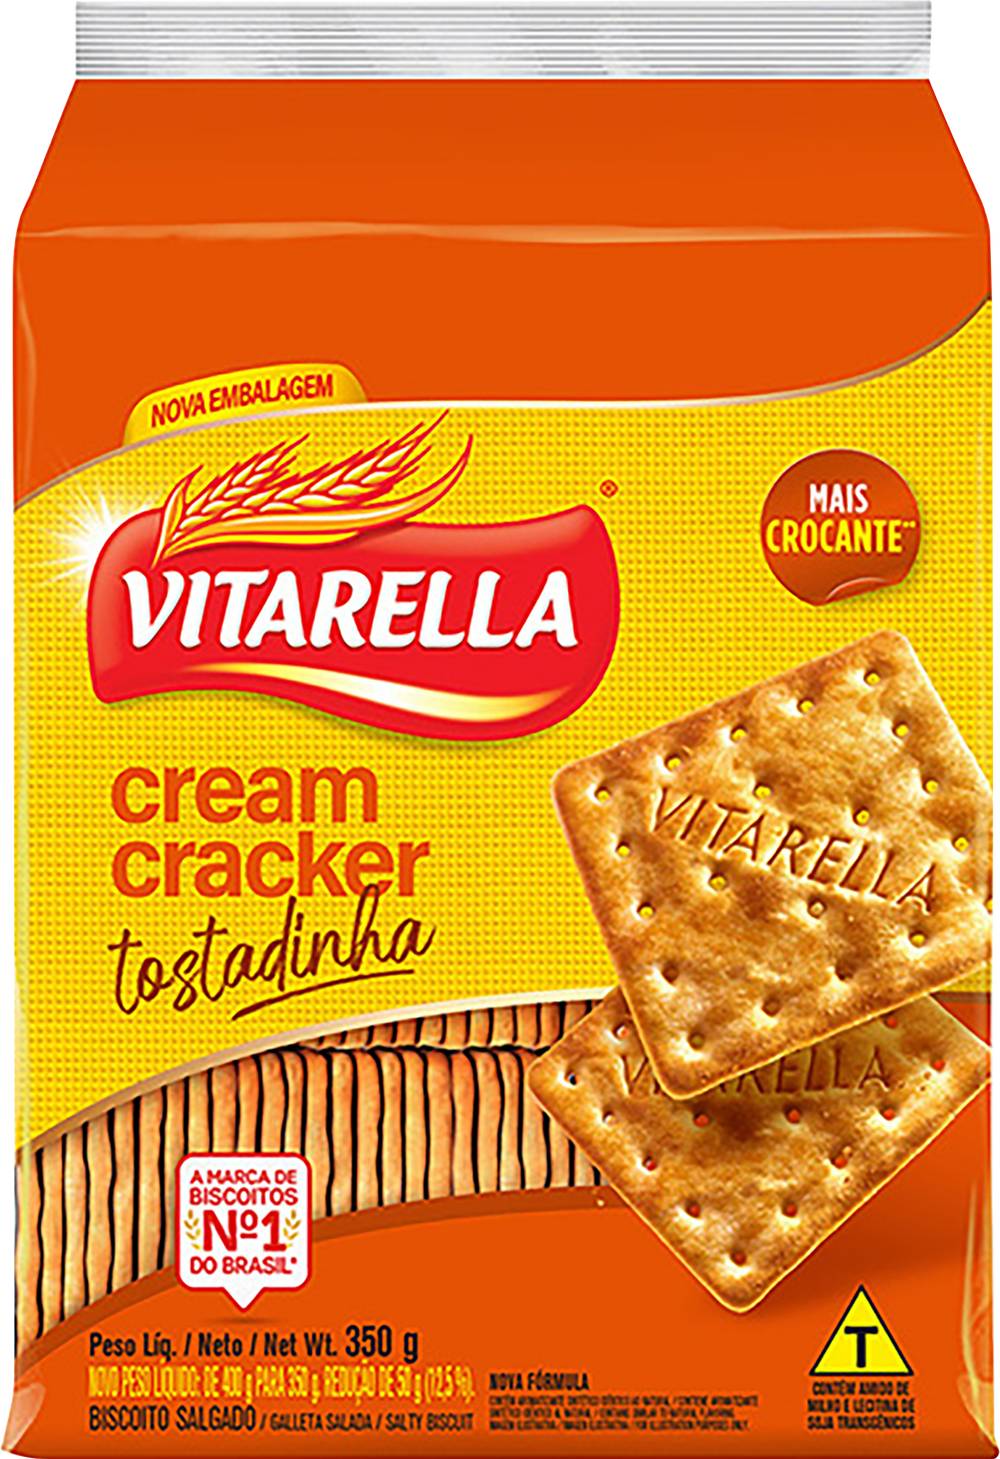 Vitarella biscoito cream cracker tostadinha (350g)